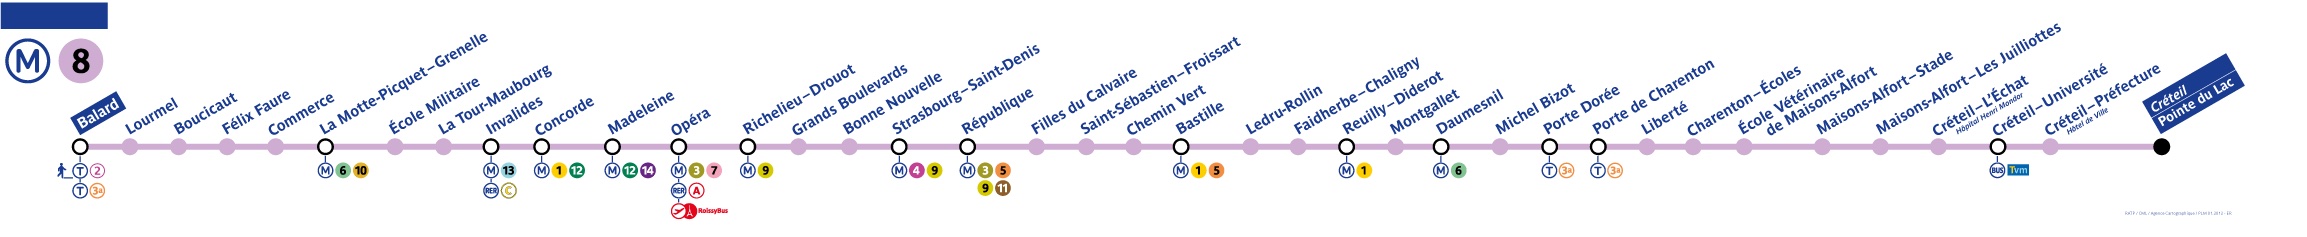 plan ligne 8 metro paris